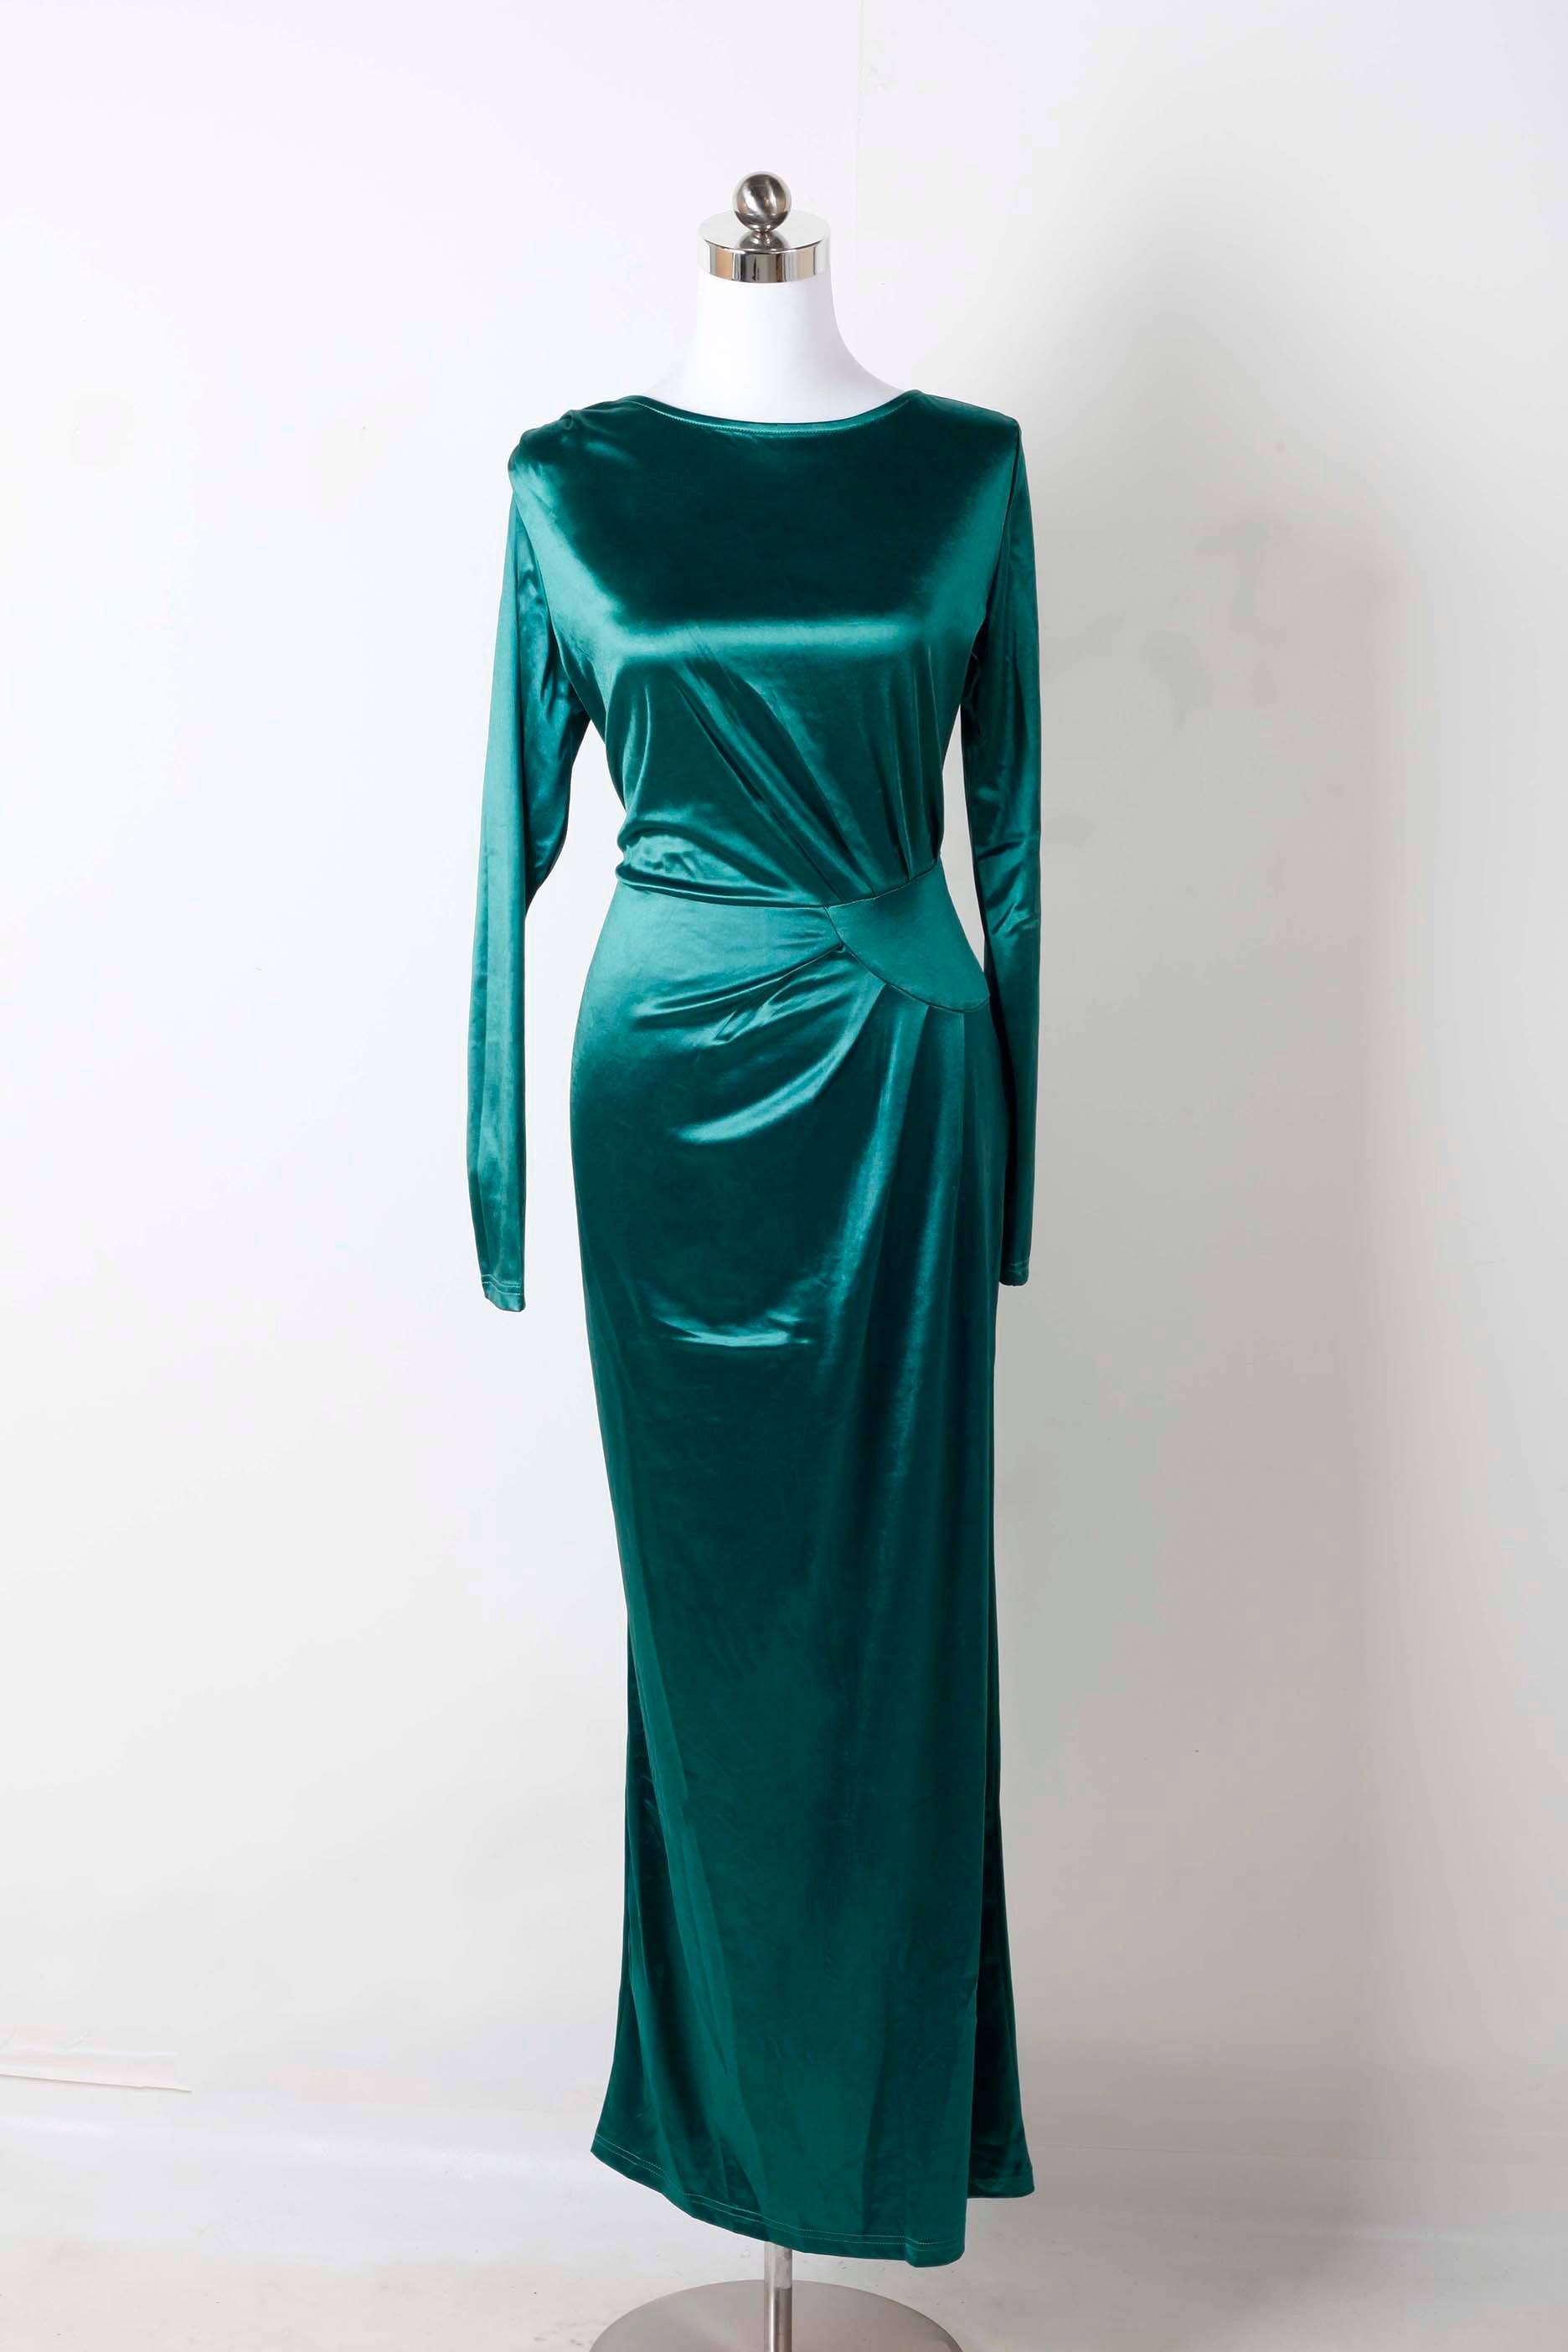 Full-length Emerald Stretch Satin Gown (Eu36-38)